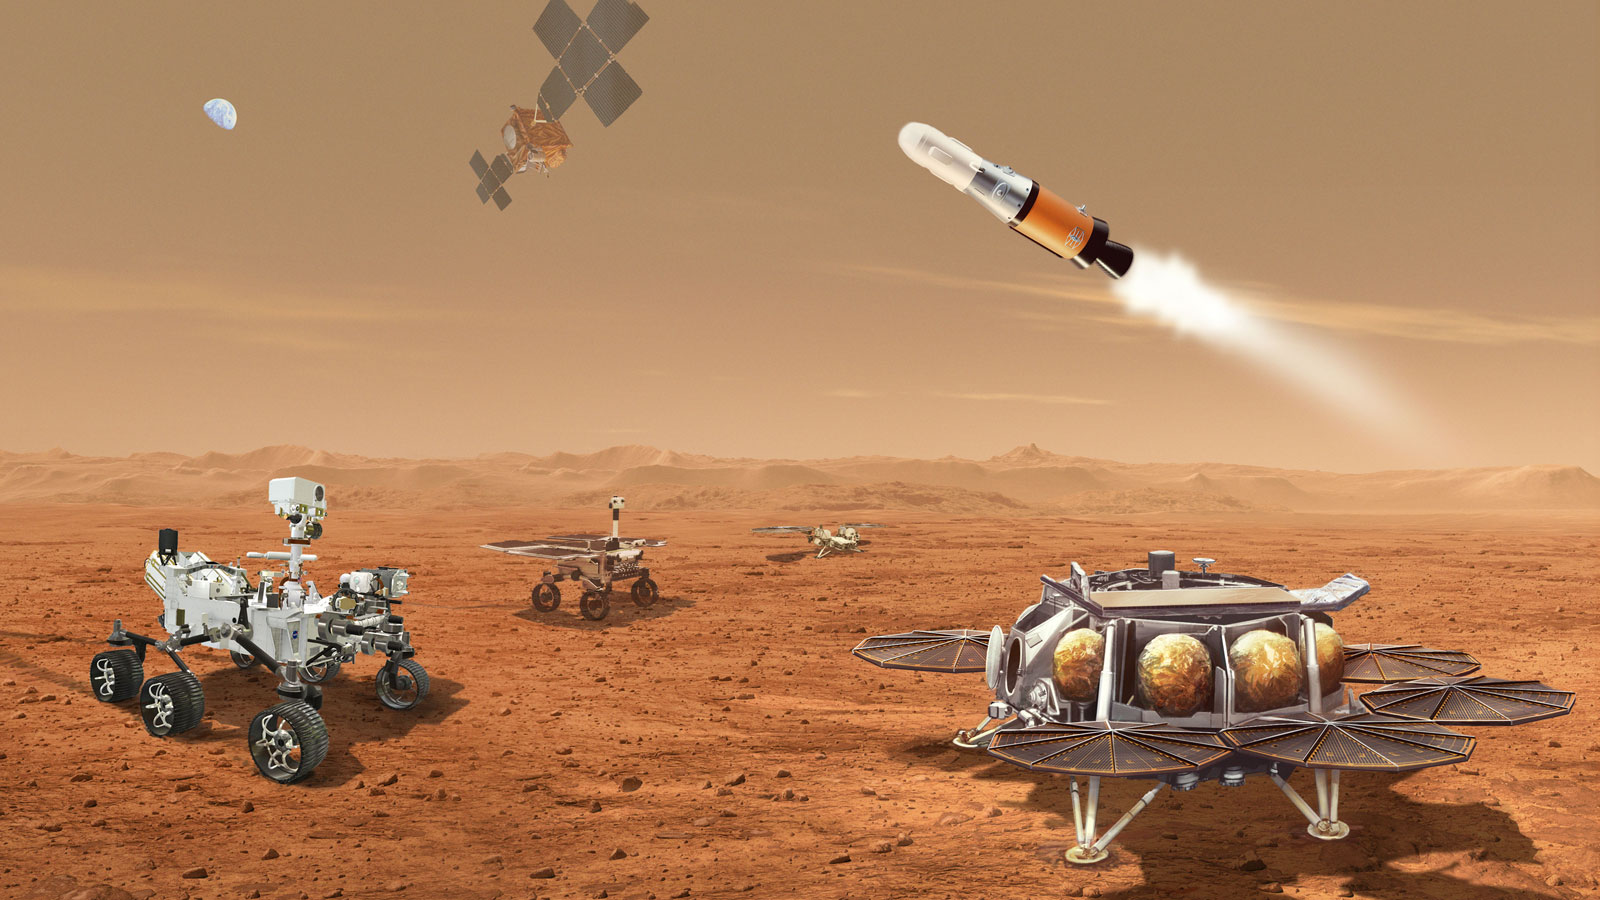 La campaña Mars Sample Returns recientemente revisada hace uso de un conjunto de maquinaria, incluido el uso de helicópteros, para recolectar muestras de suelo, roca y atmósfera marciana para devolverlas a la Tierra.